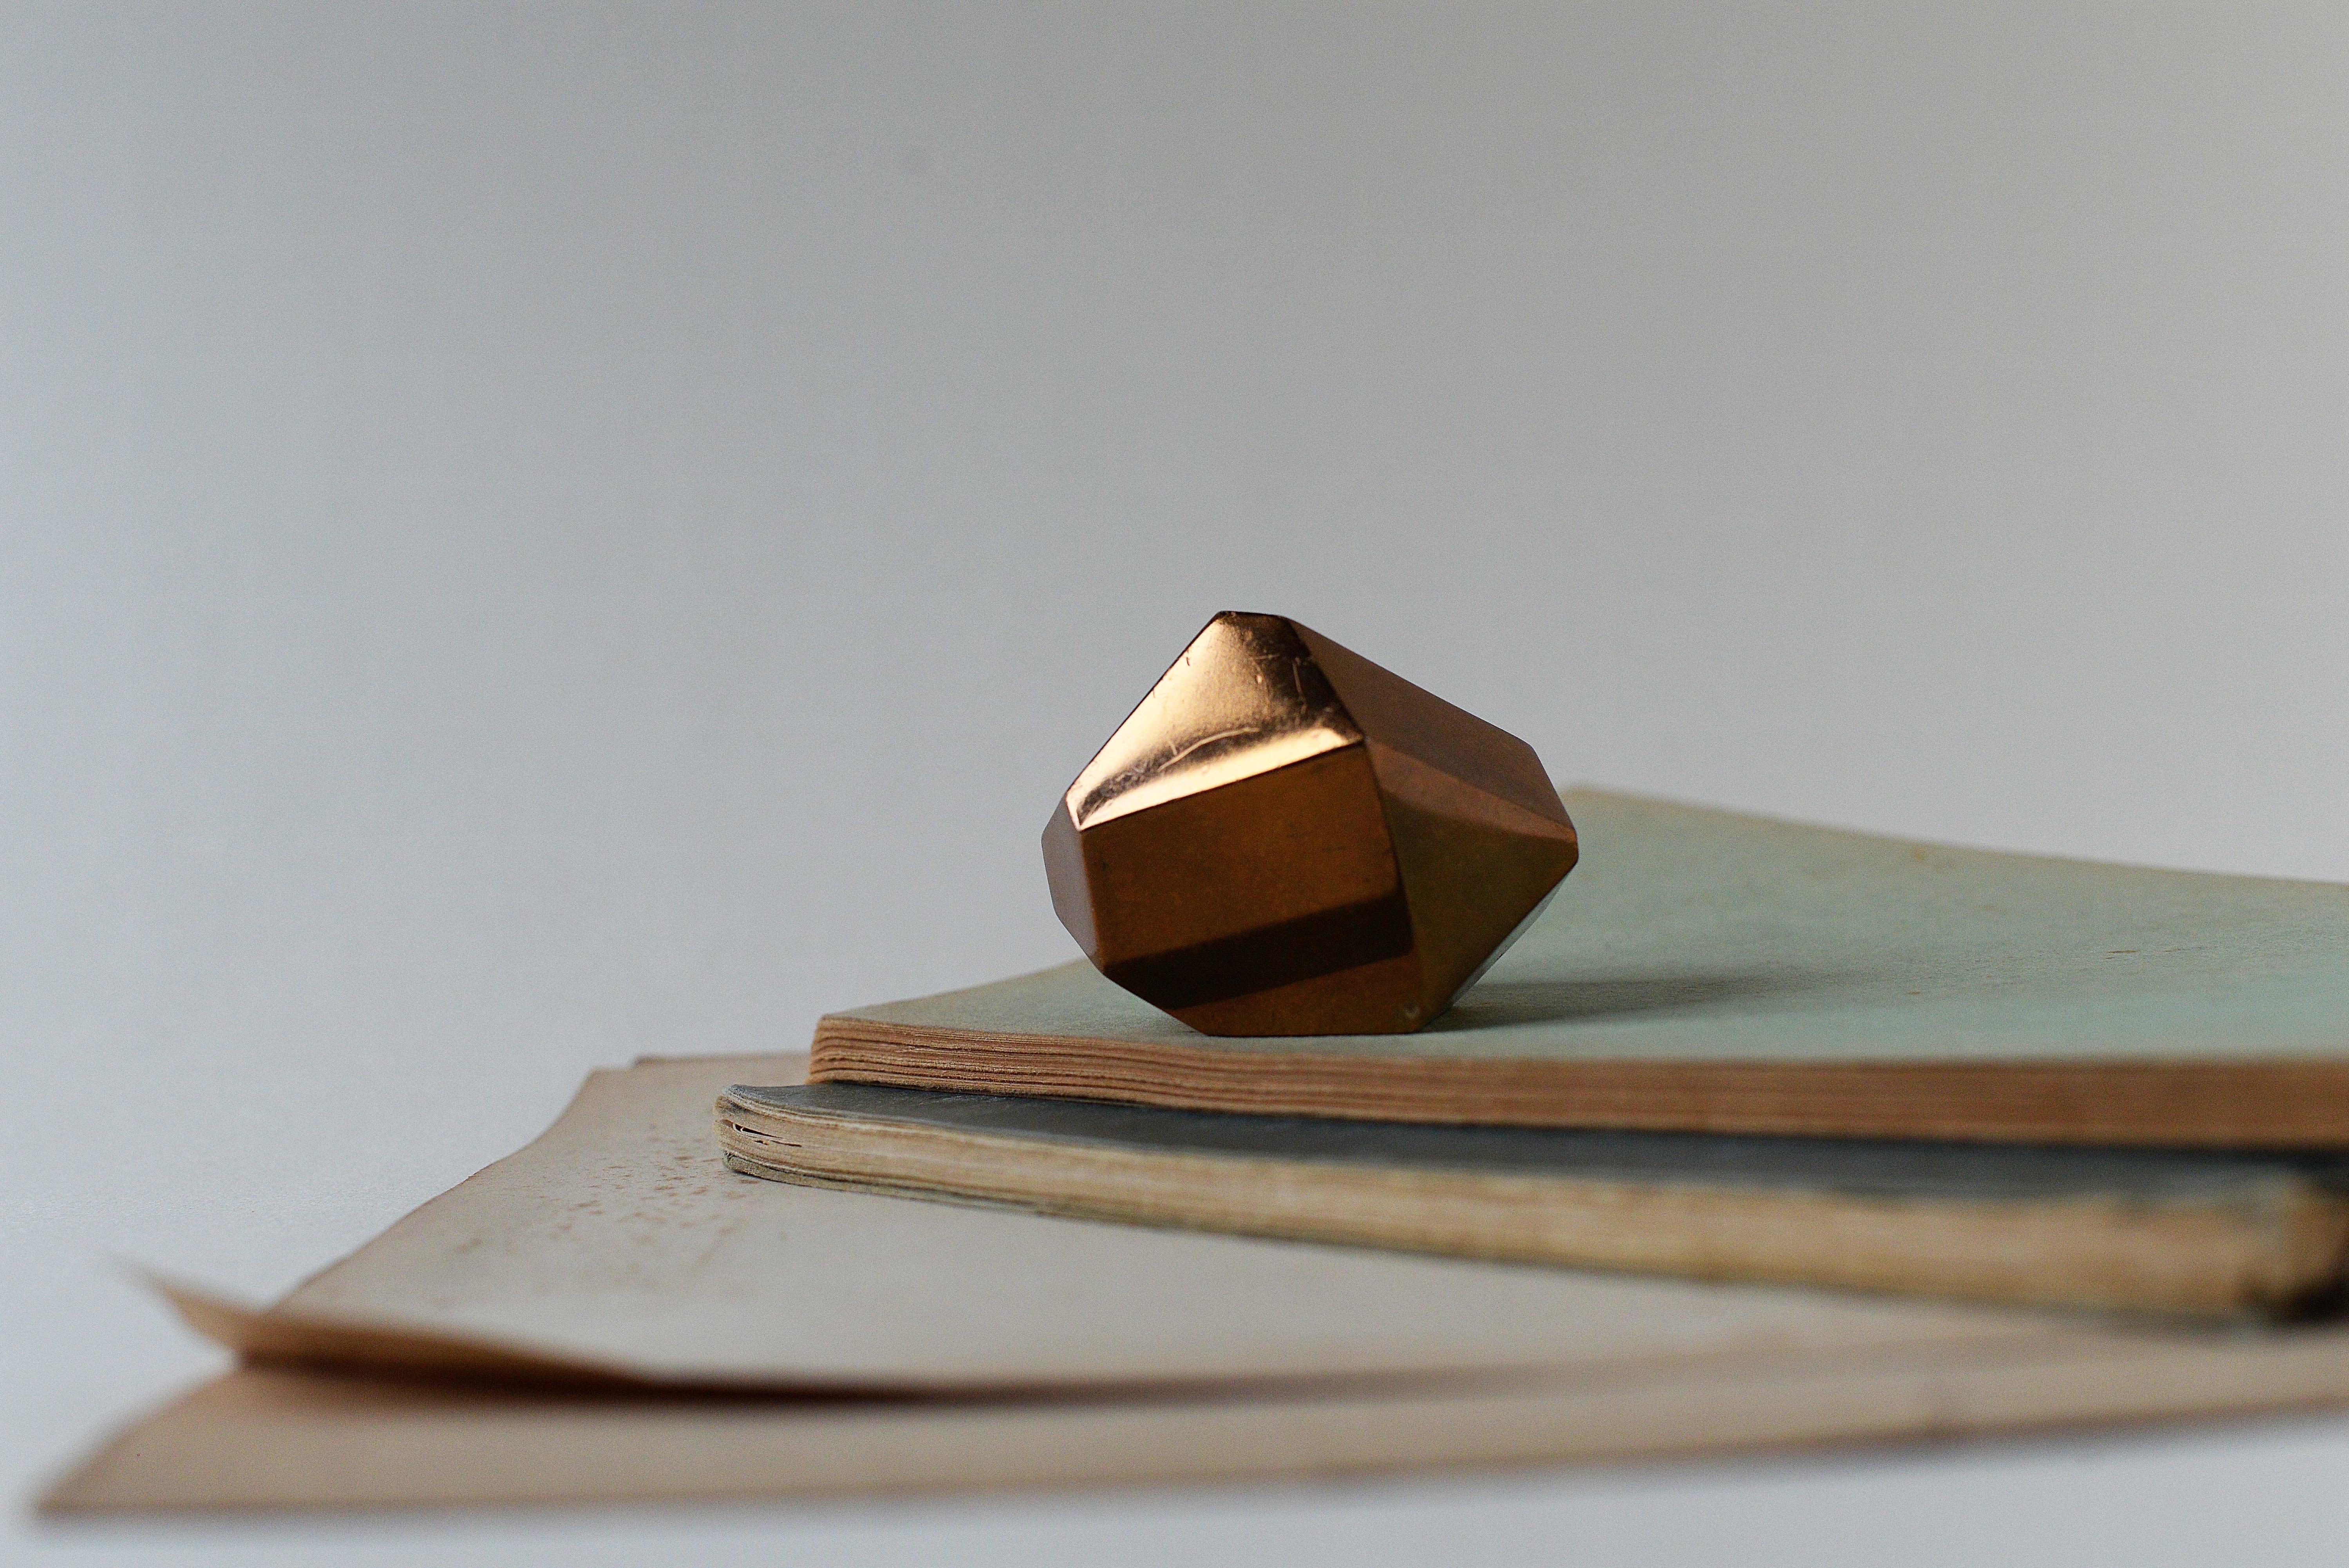 Geometrischer Briefbeschwerer aus Bronze, vermessingt, 1980er Jahre

Dieser Briefbeschwerer aus Bronze wirkt dank seiner grafischen und geometrischen Linien wie ein Schmuckstück.

Dieses Stück wurde 1987 anlässlich des 20-jährigen Bestehens des